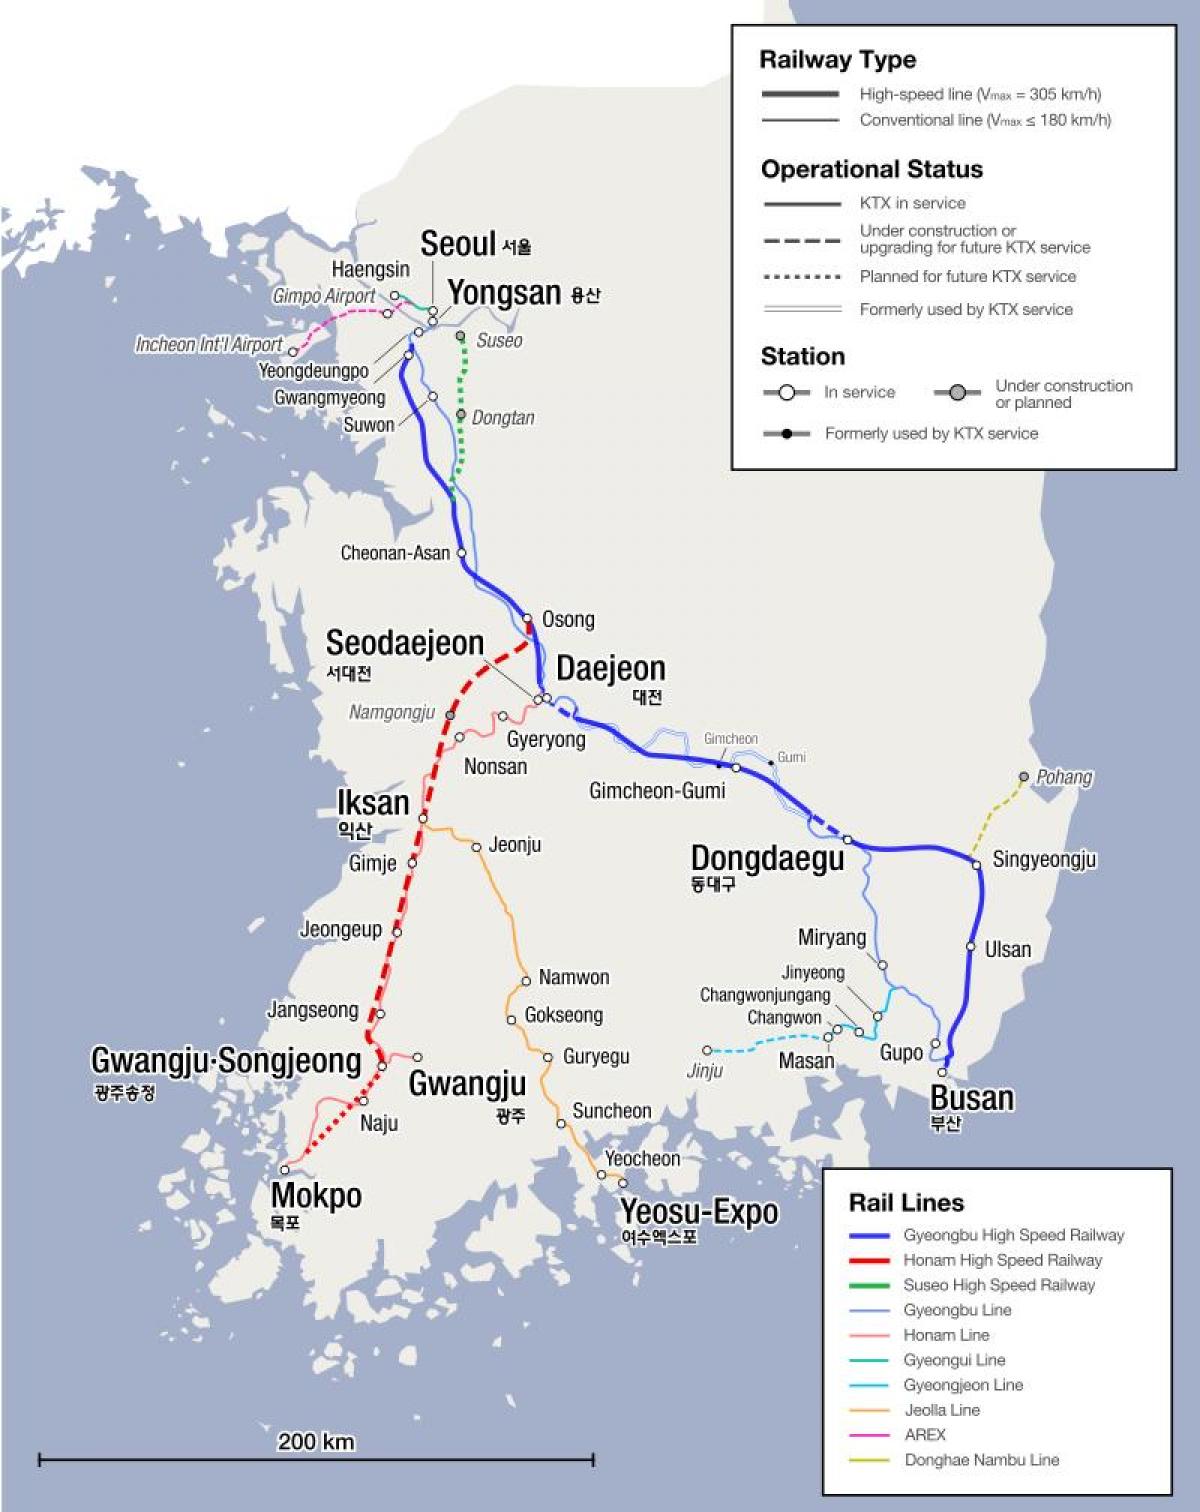 Mapa das linhas de trem da Coréia do Sul (ROK)